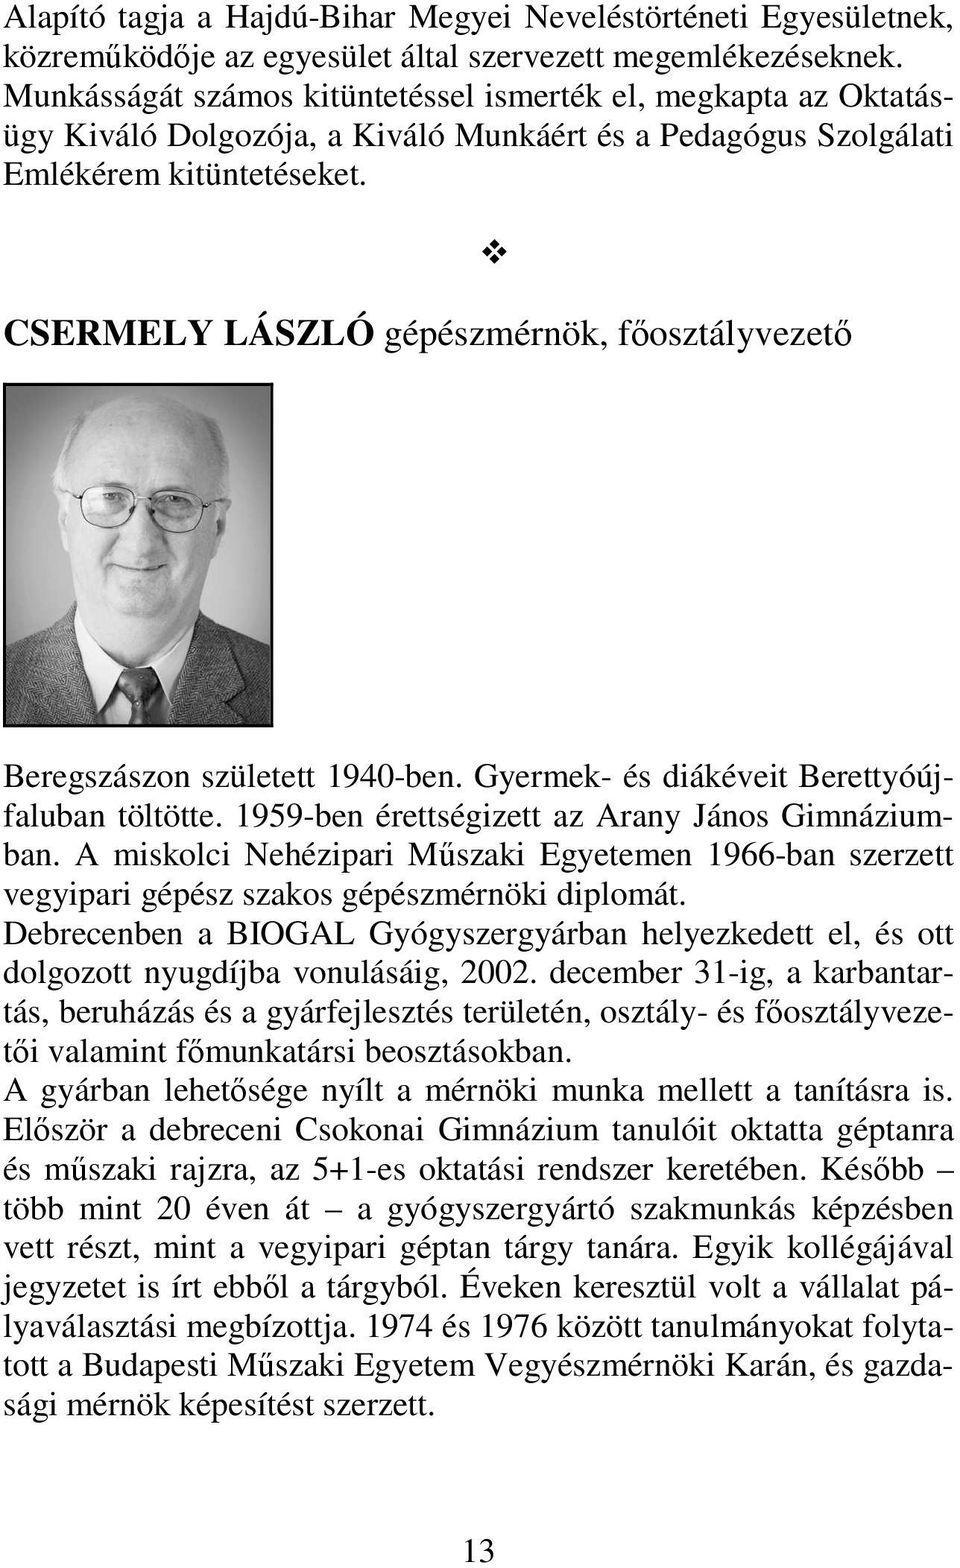 CSERMELY LÁSZLÓ gépészmérnök, főosztályvezető Beregszászon született 1940-ben. Gyermek- és diákéveit Berettyóújfaluban töltötte. 1959-ben érettségizett az Arany János Gimnáziumban.